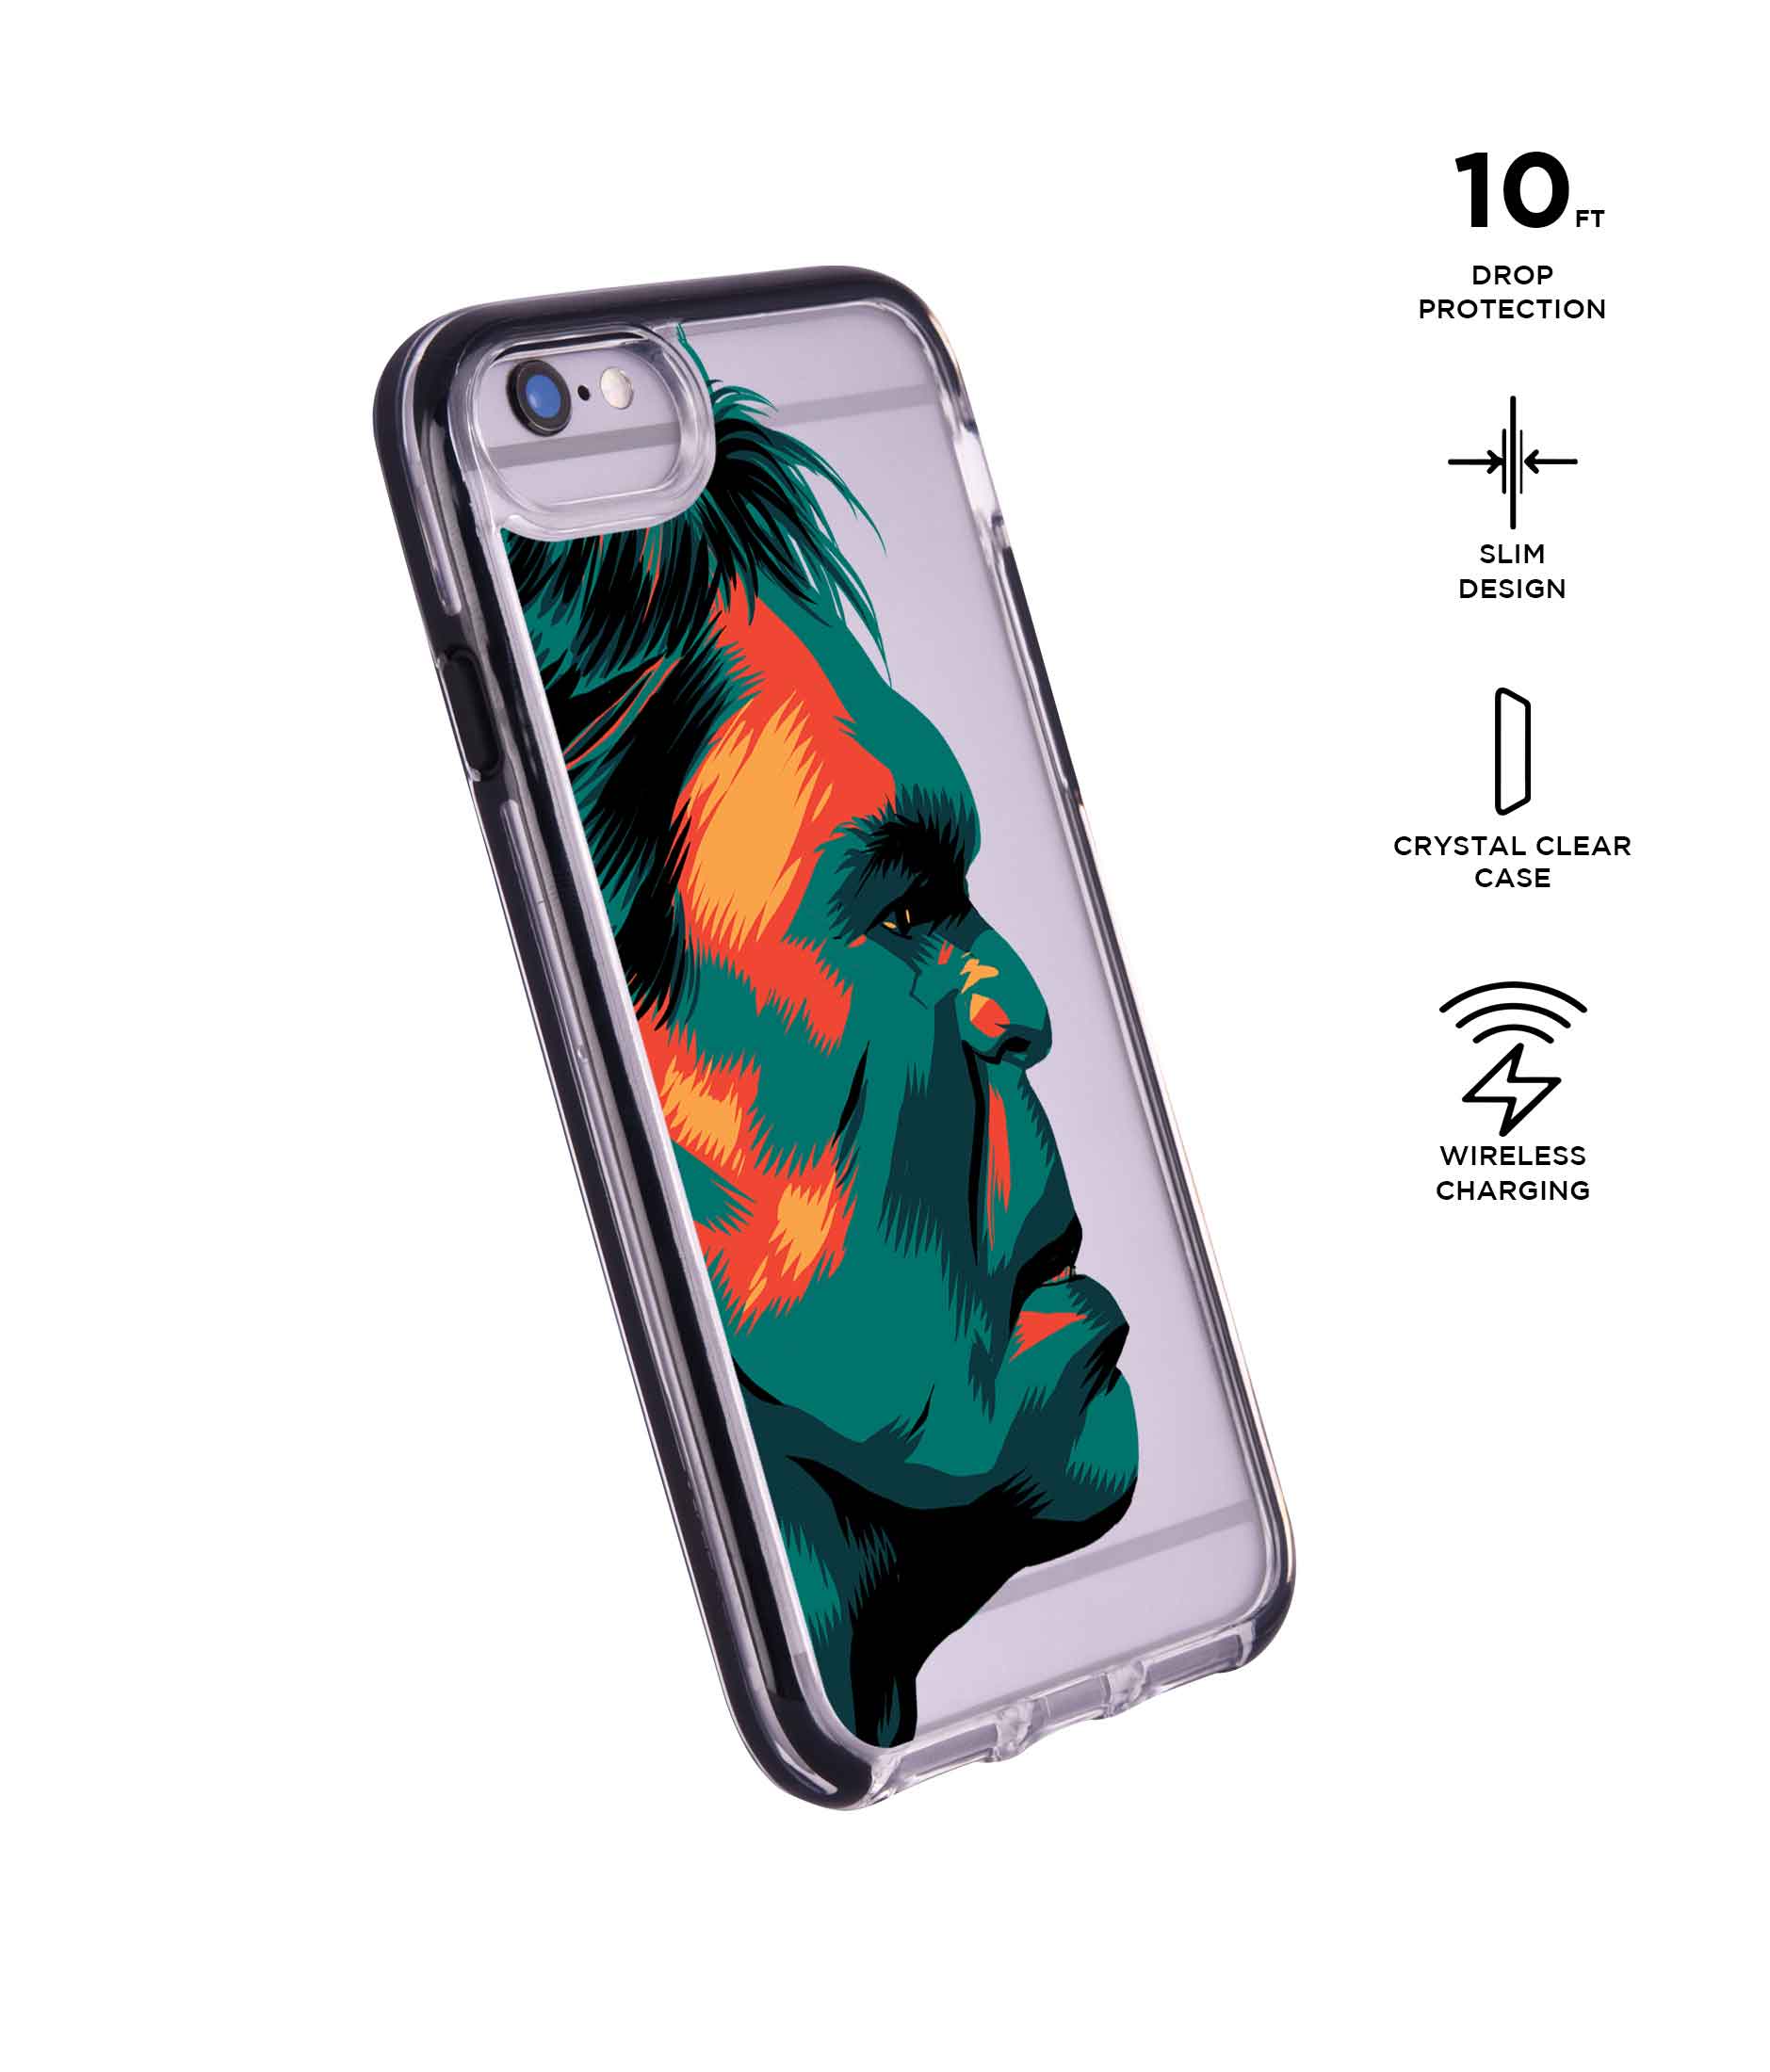 Illuminated Hulk - Extreme Phone Case for iPhone 6